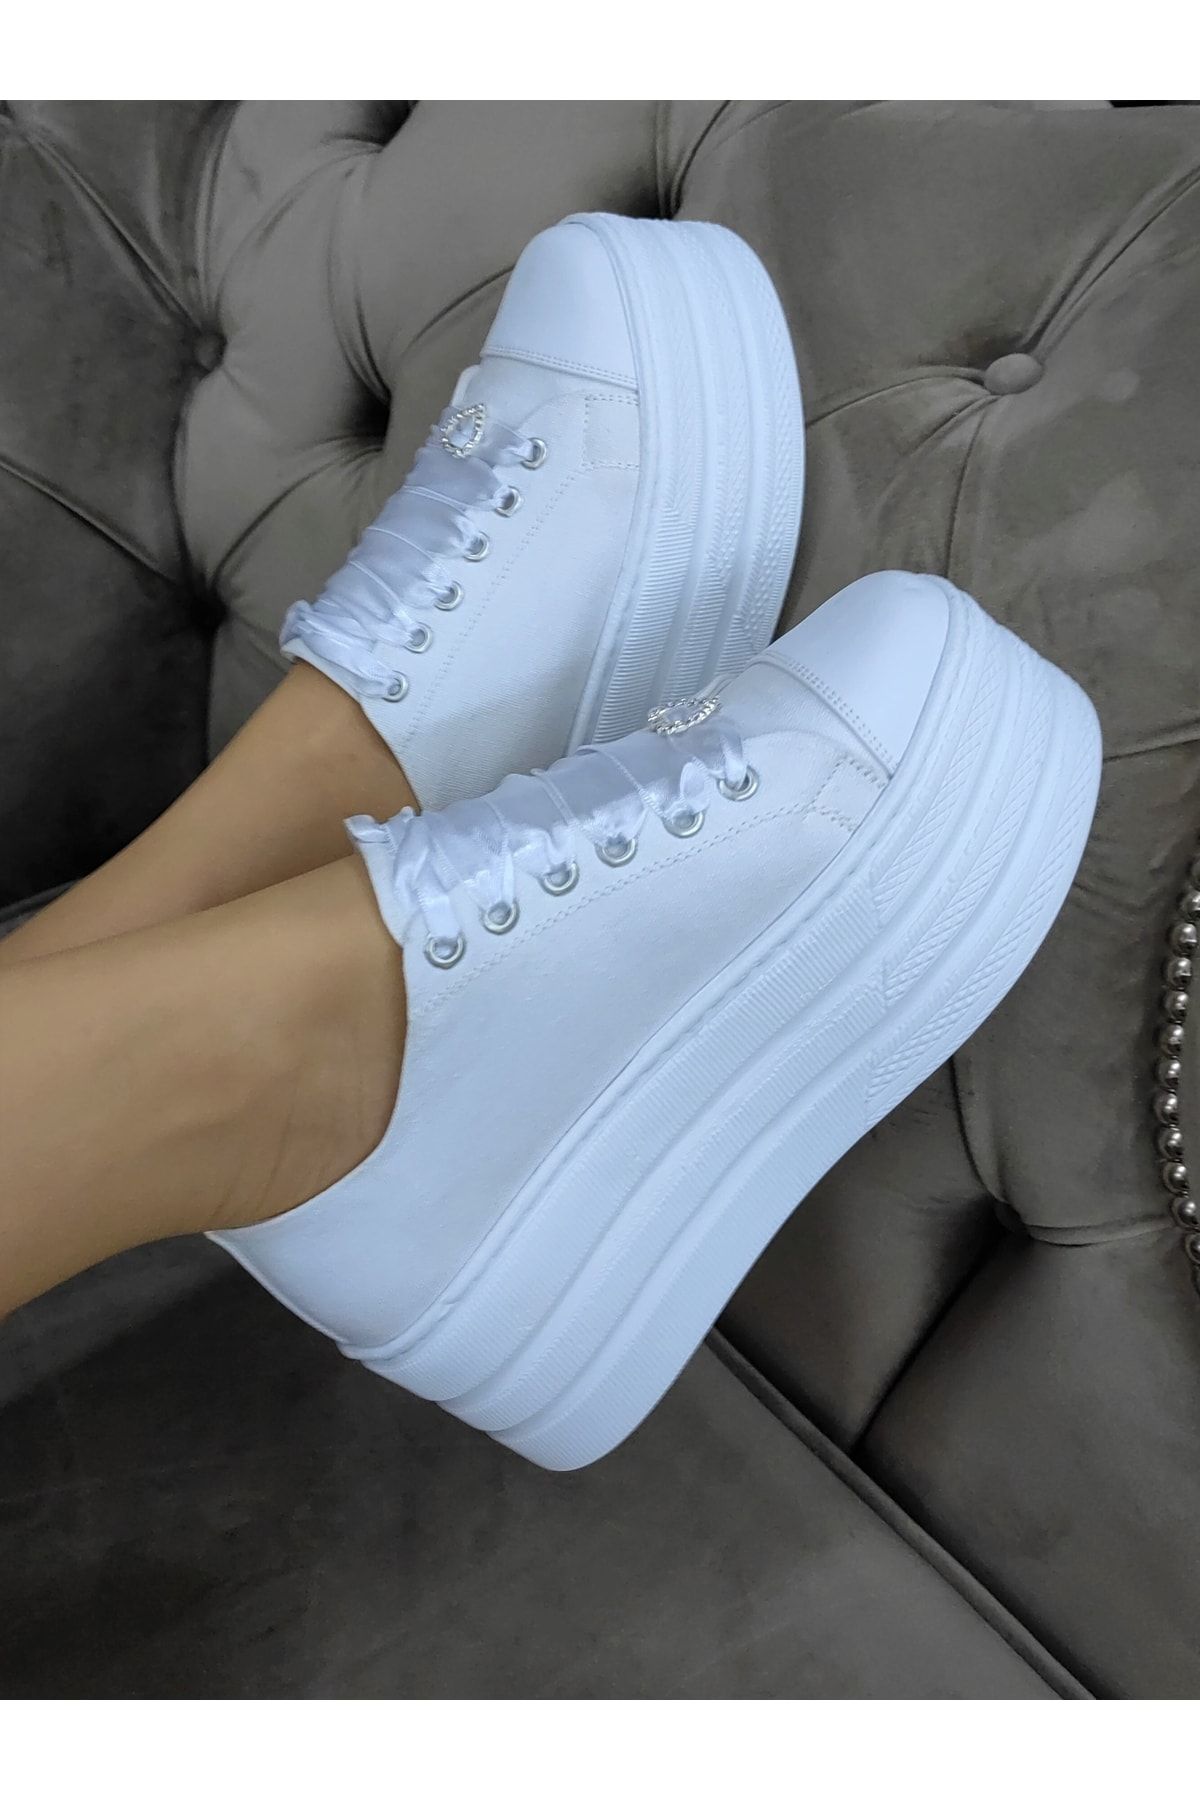 Ayakkabı Tutkusu Stilo ® Gelin Ayakkabısı Beyaz Keten Platform Düz Taban 7cm Aşırı Rahat